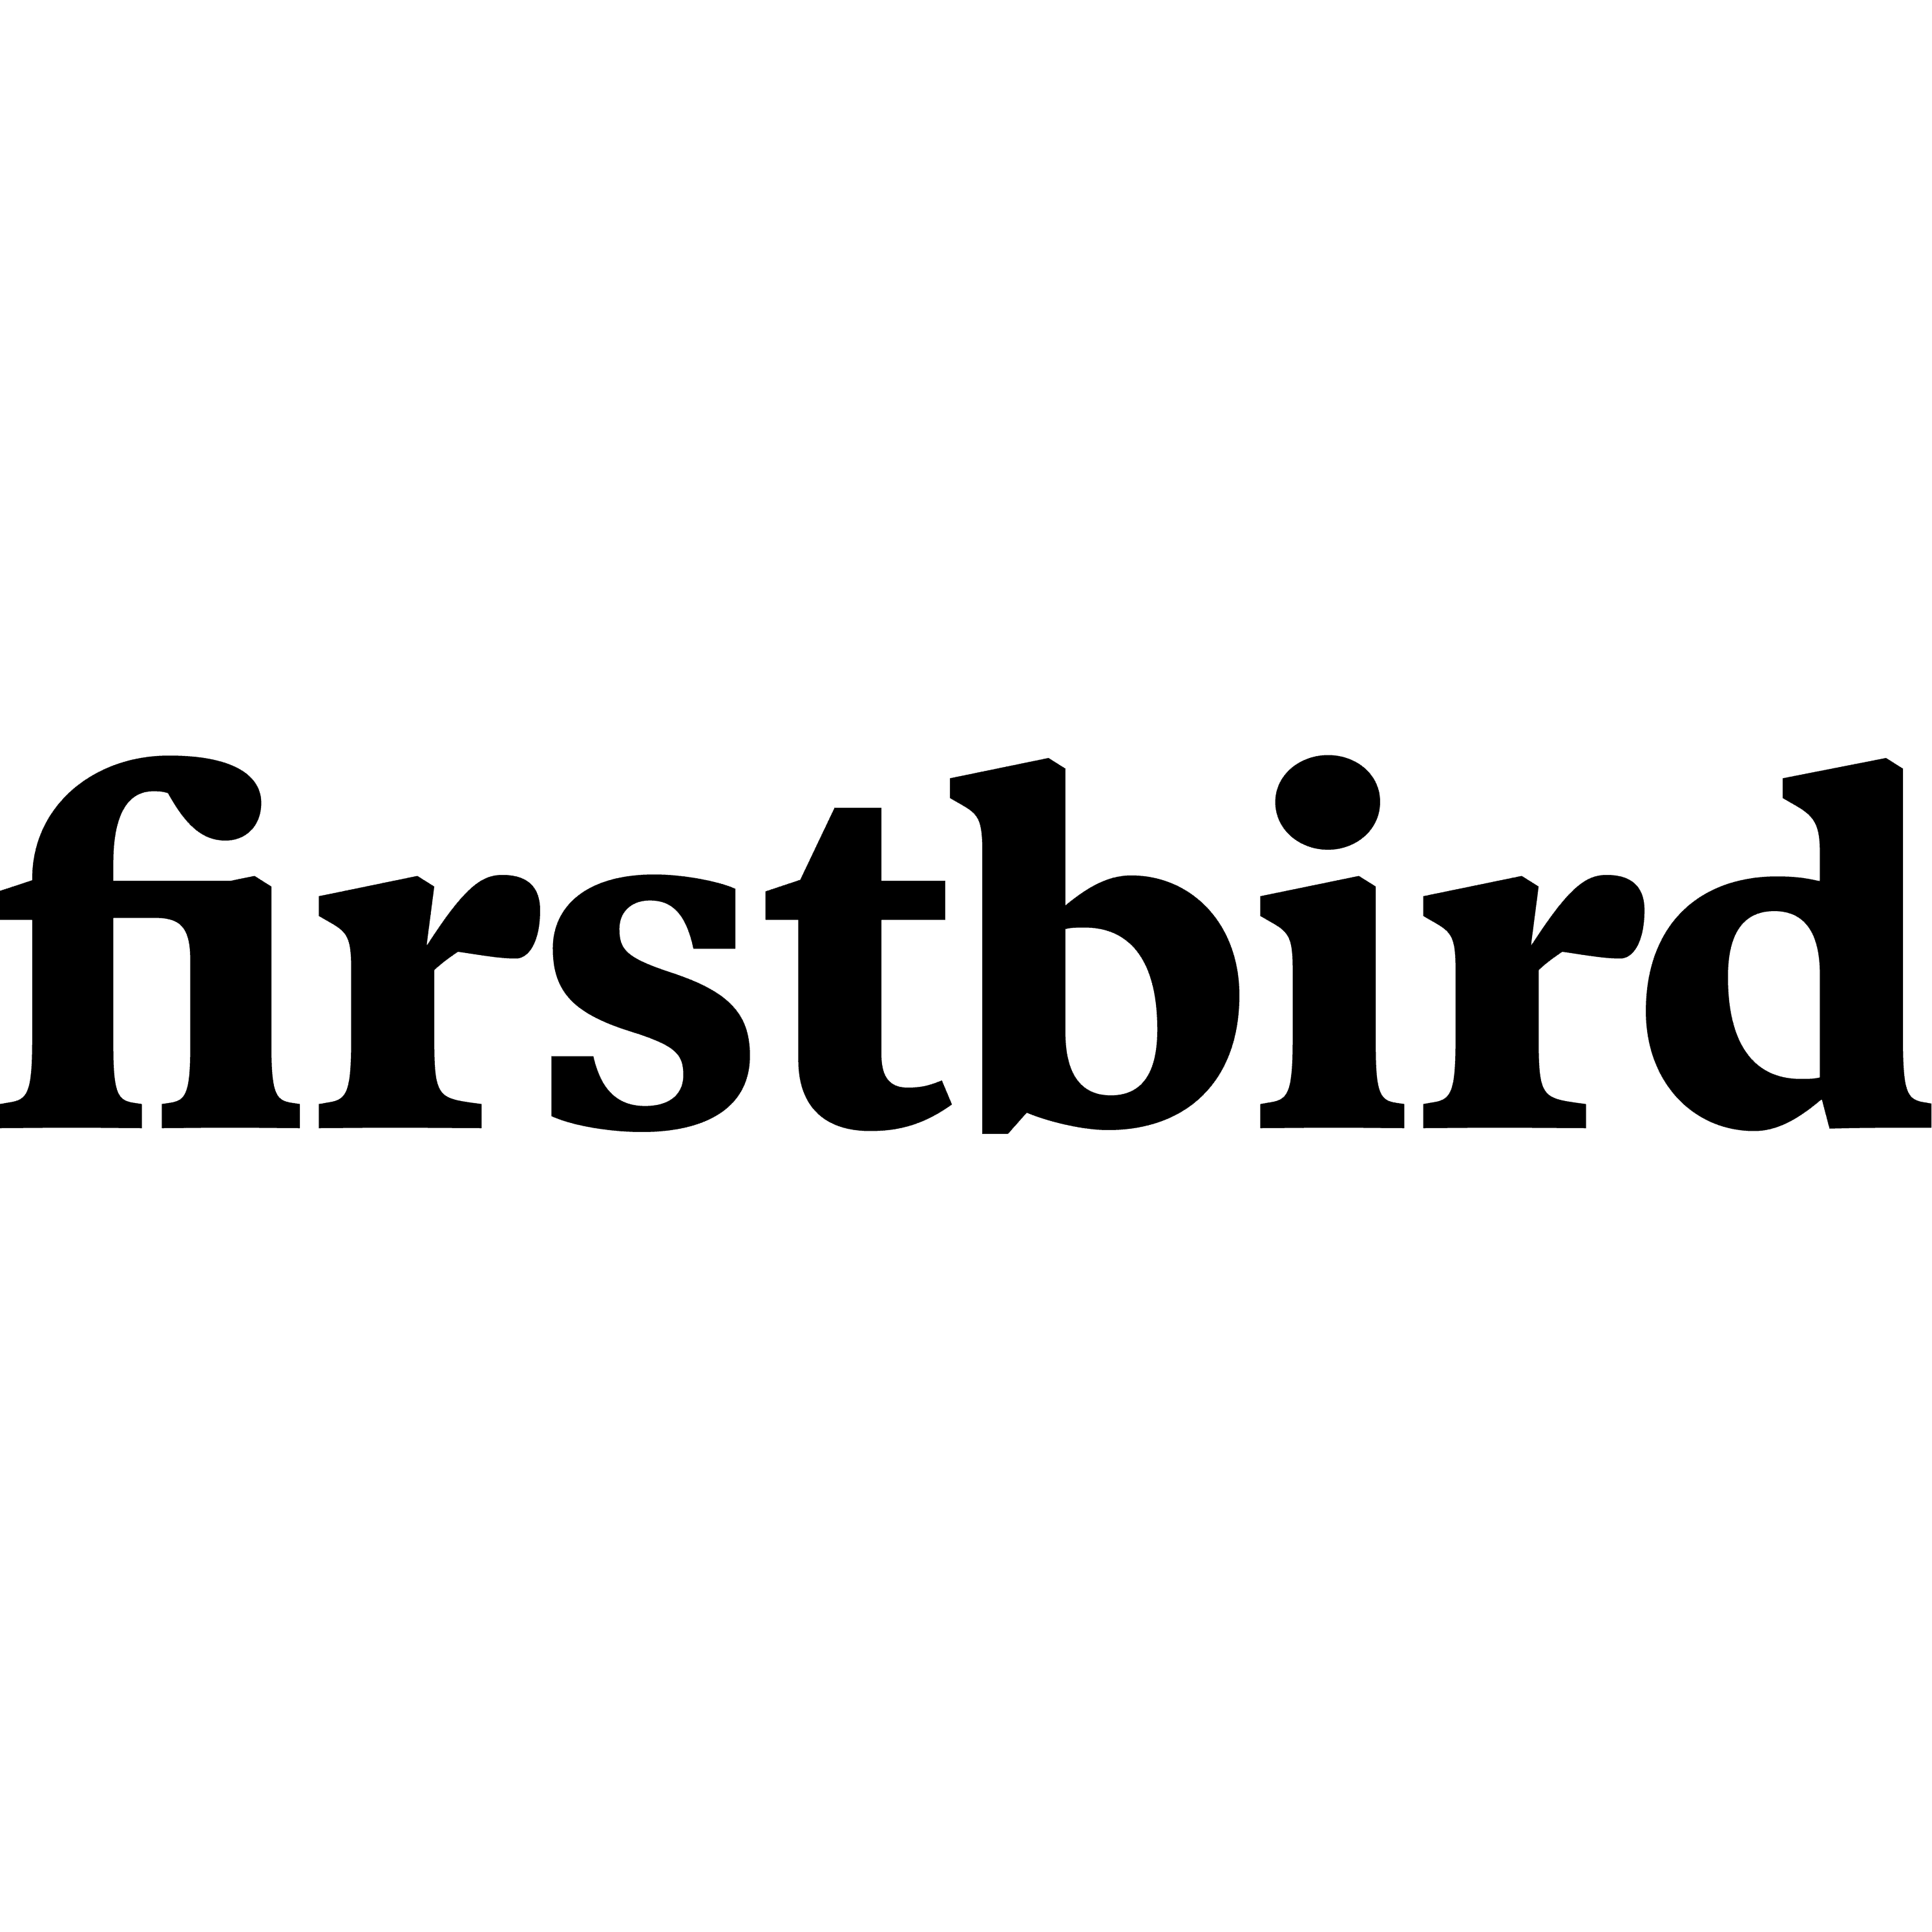 firstbird logo